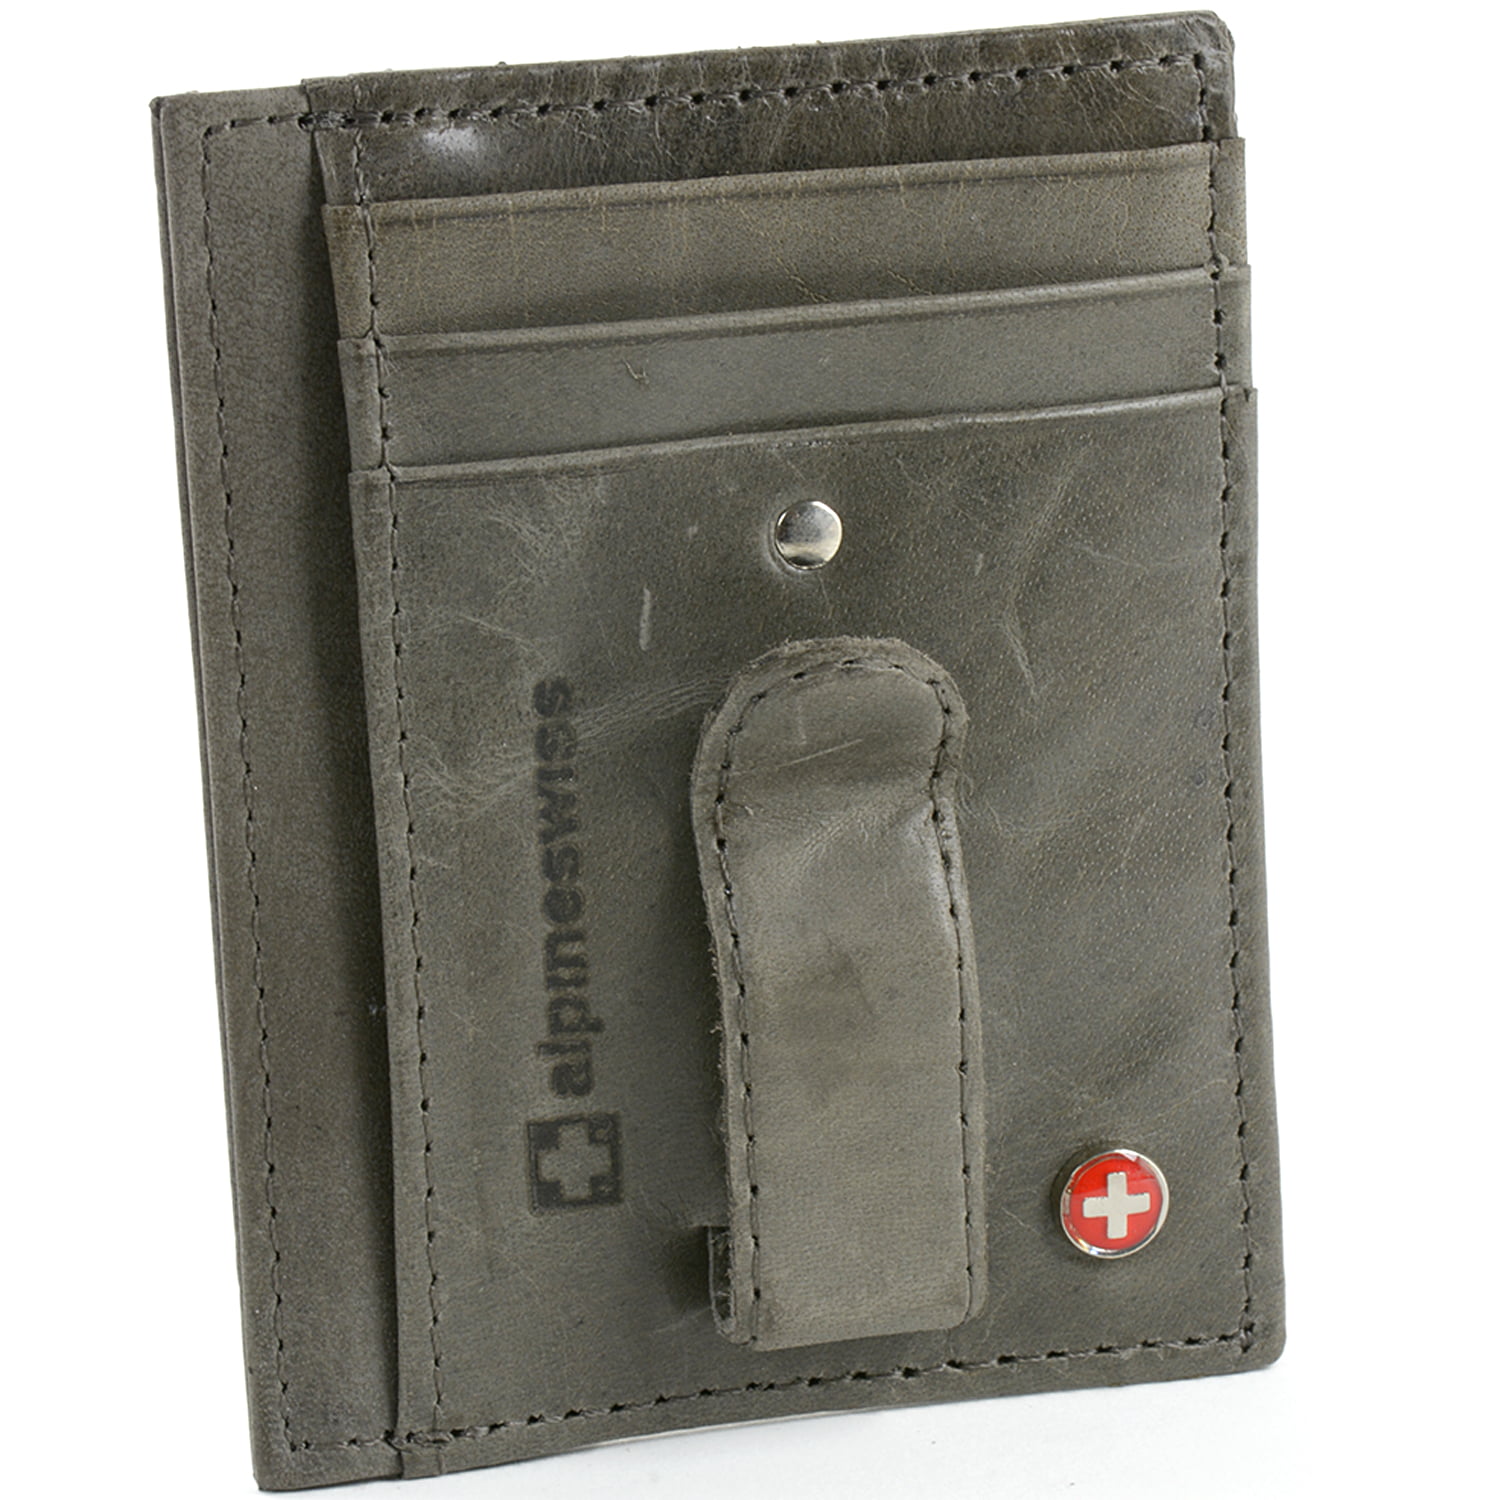 Mens Genuine Leather Money Clip Slim Wallet Magnetic Black ID Credit Card Holder - www.waldenwongart.com